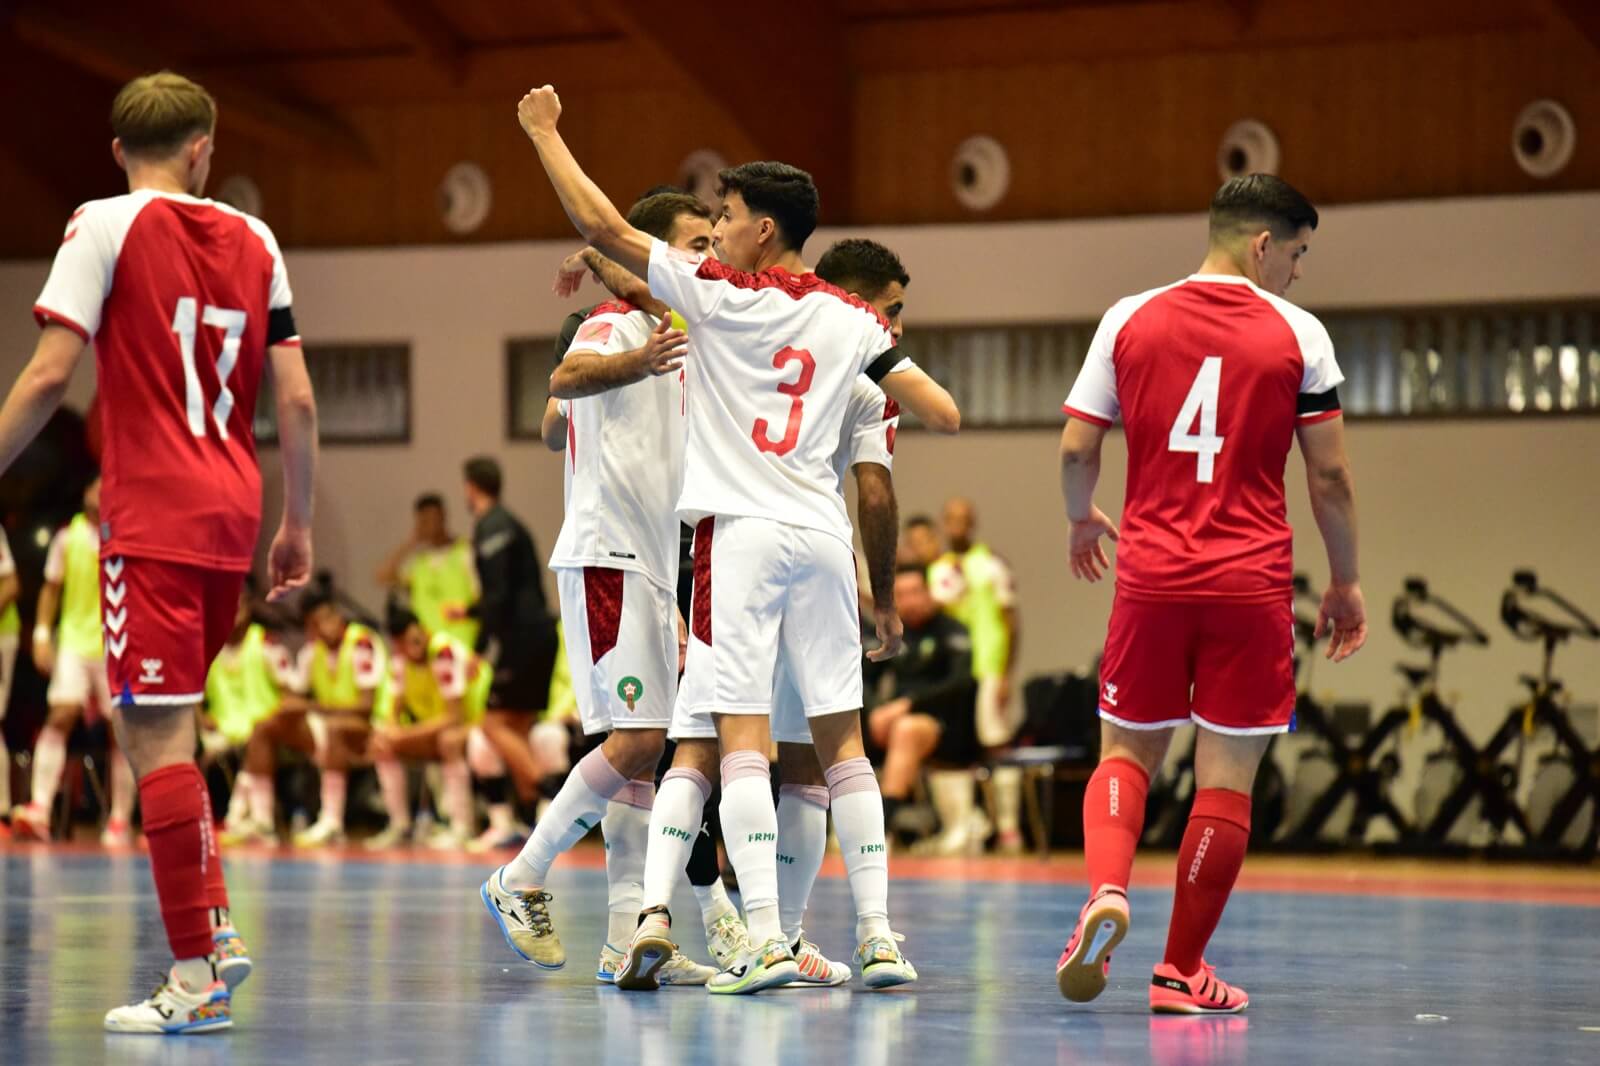 مباراة ودية في كرة القدم داخل القاعة :فوز المنتخب المغربي على الدانمارك 8-1